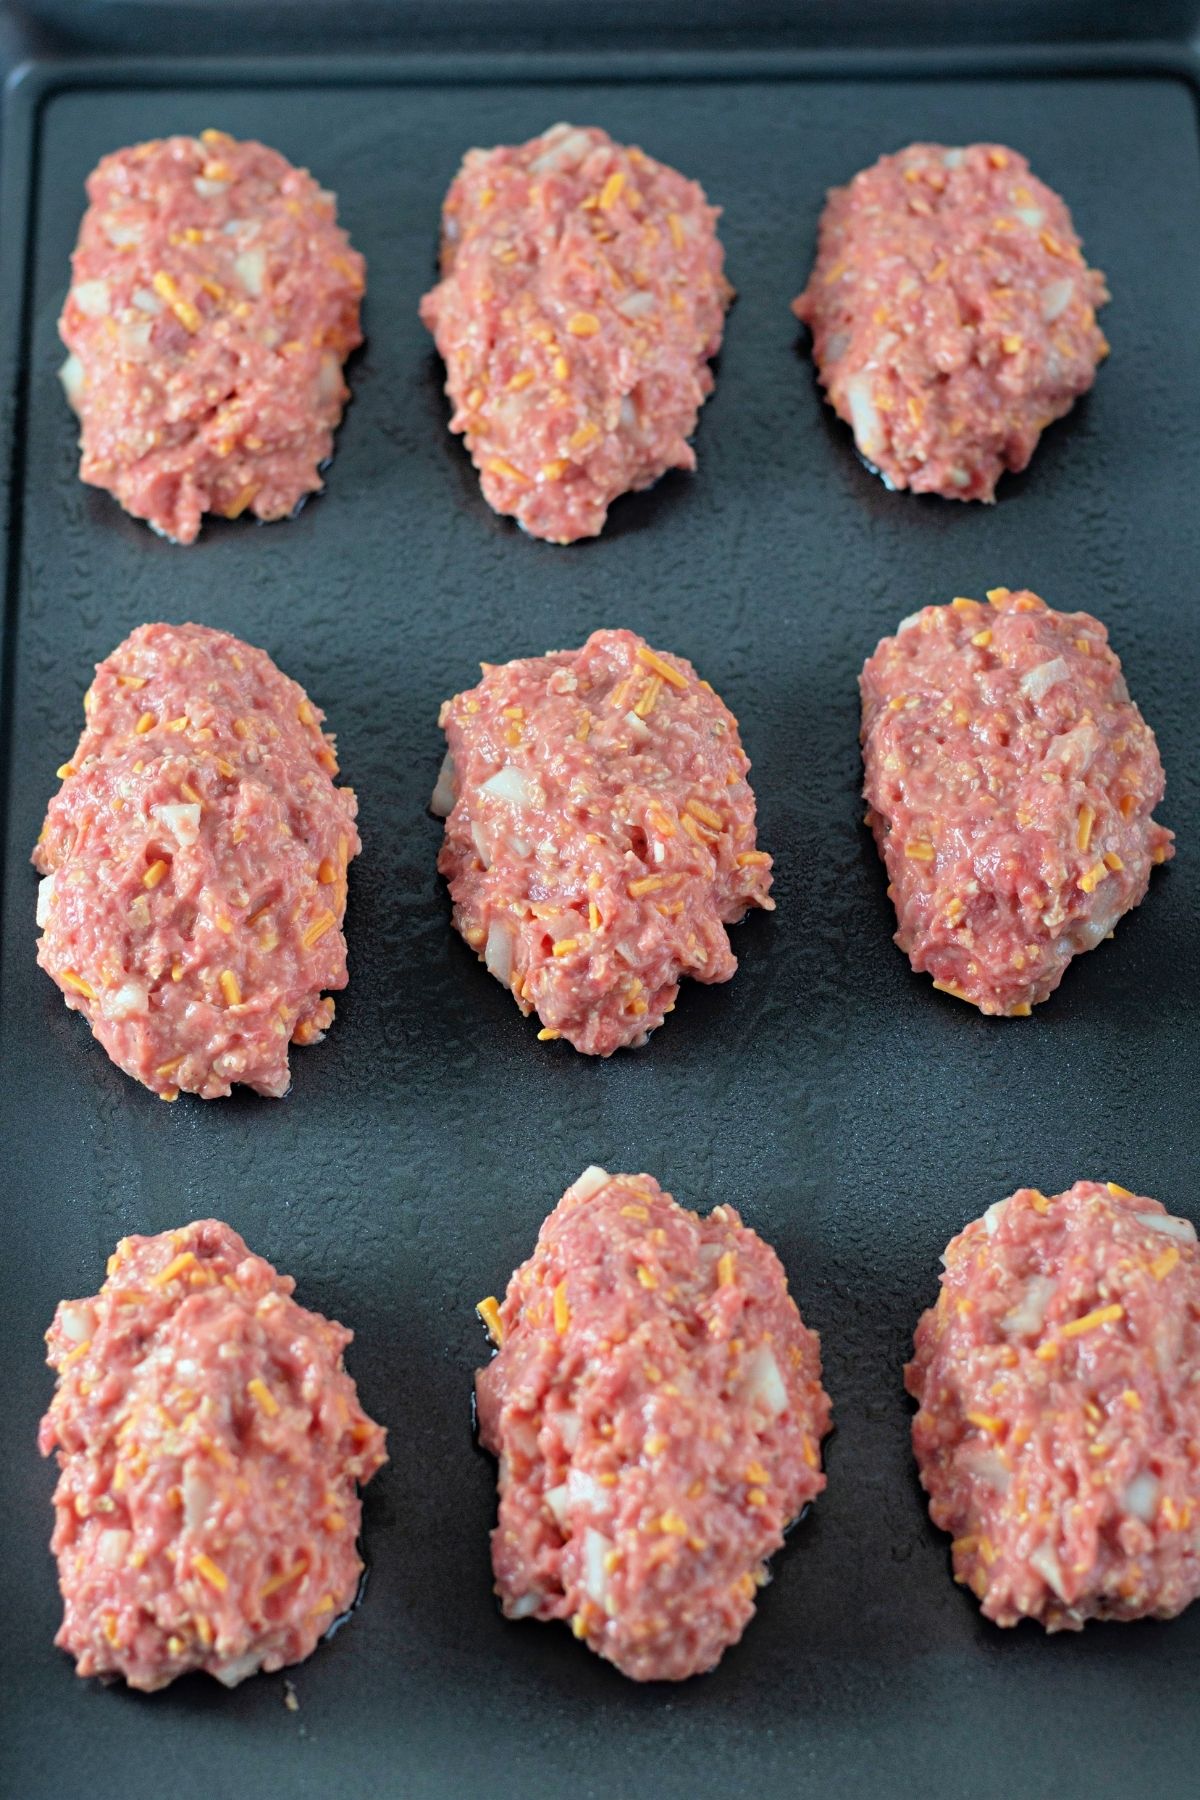 9 raw mini meatloafs on a baking sheet